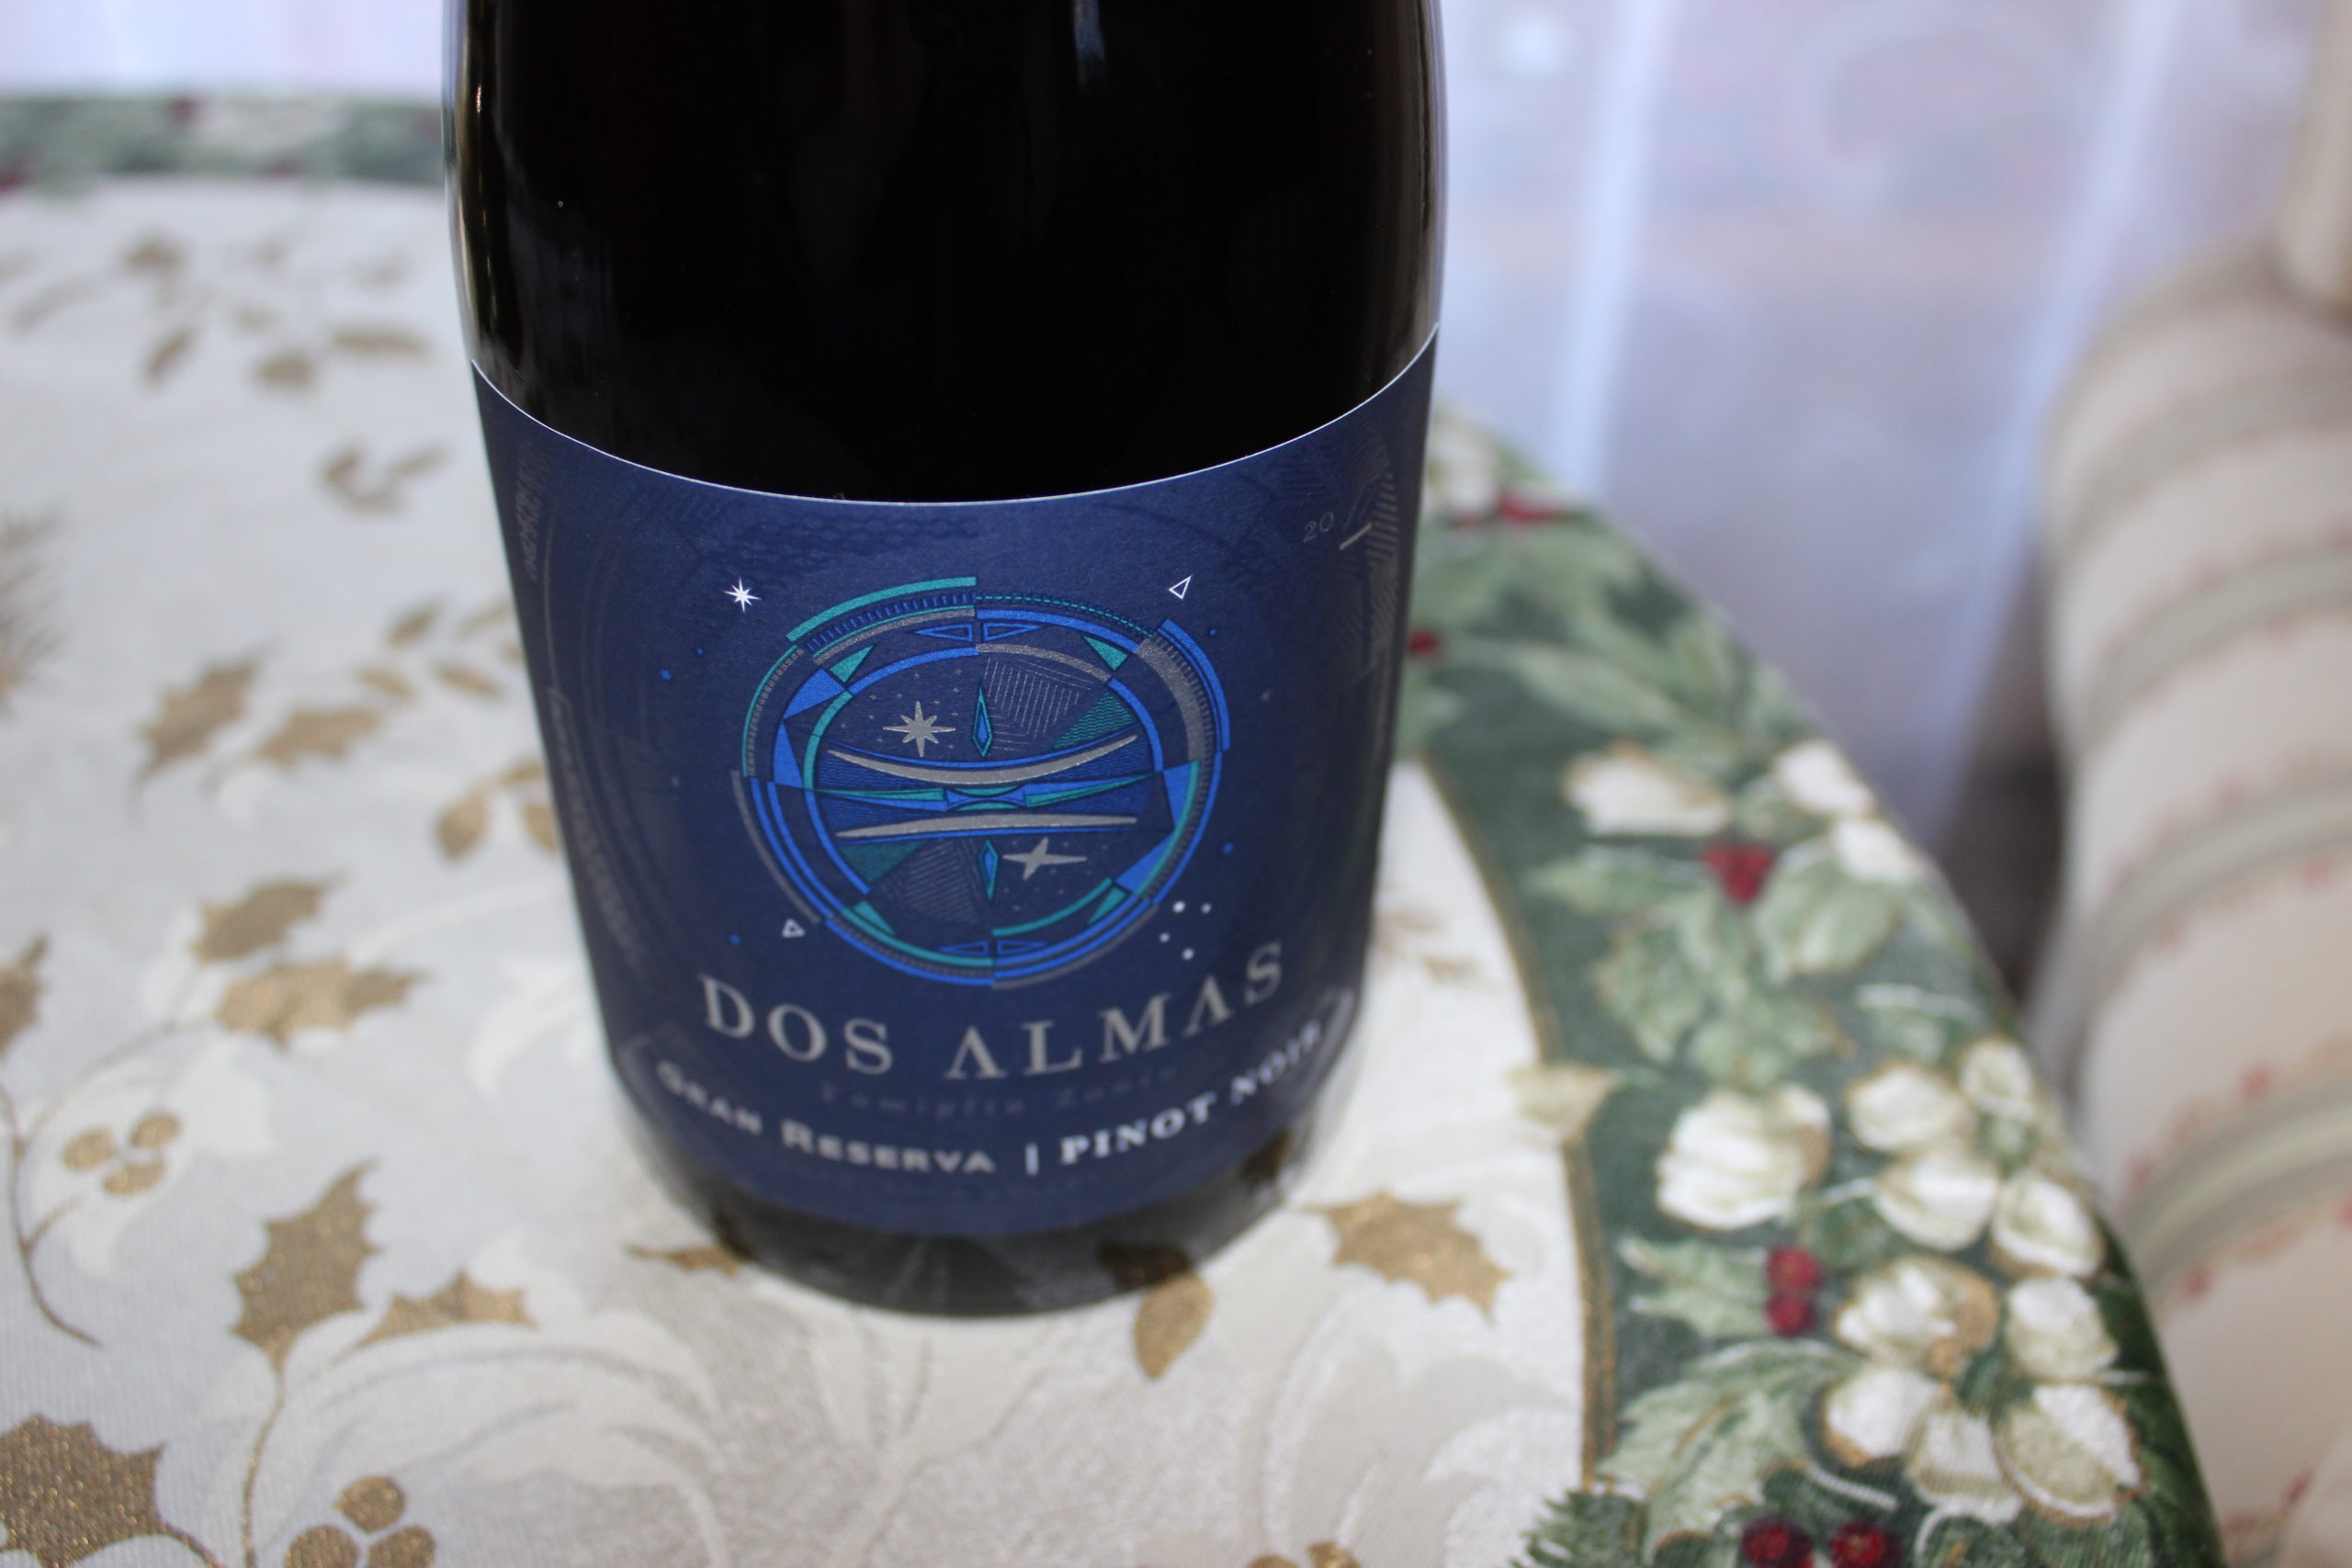 2015 Dos Almas Pinot Noir Gran Reserva